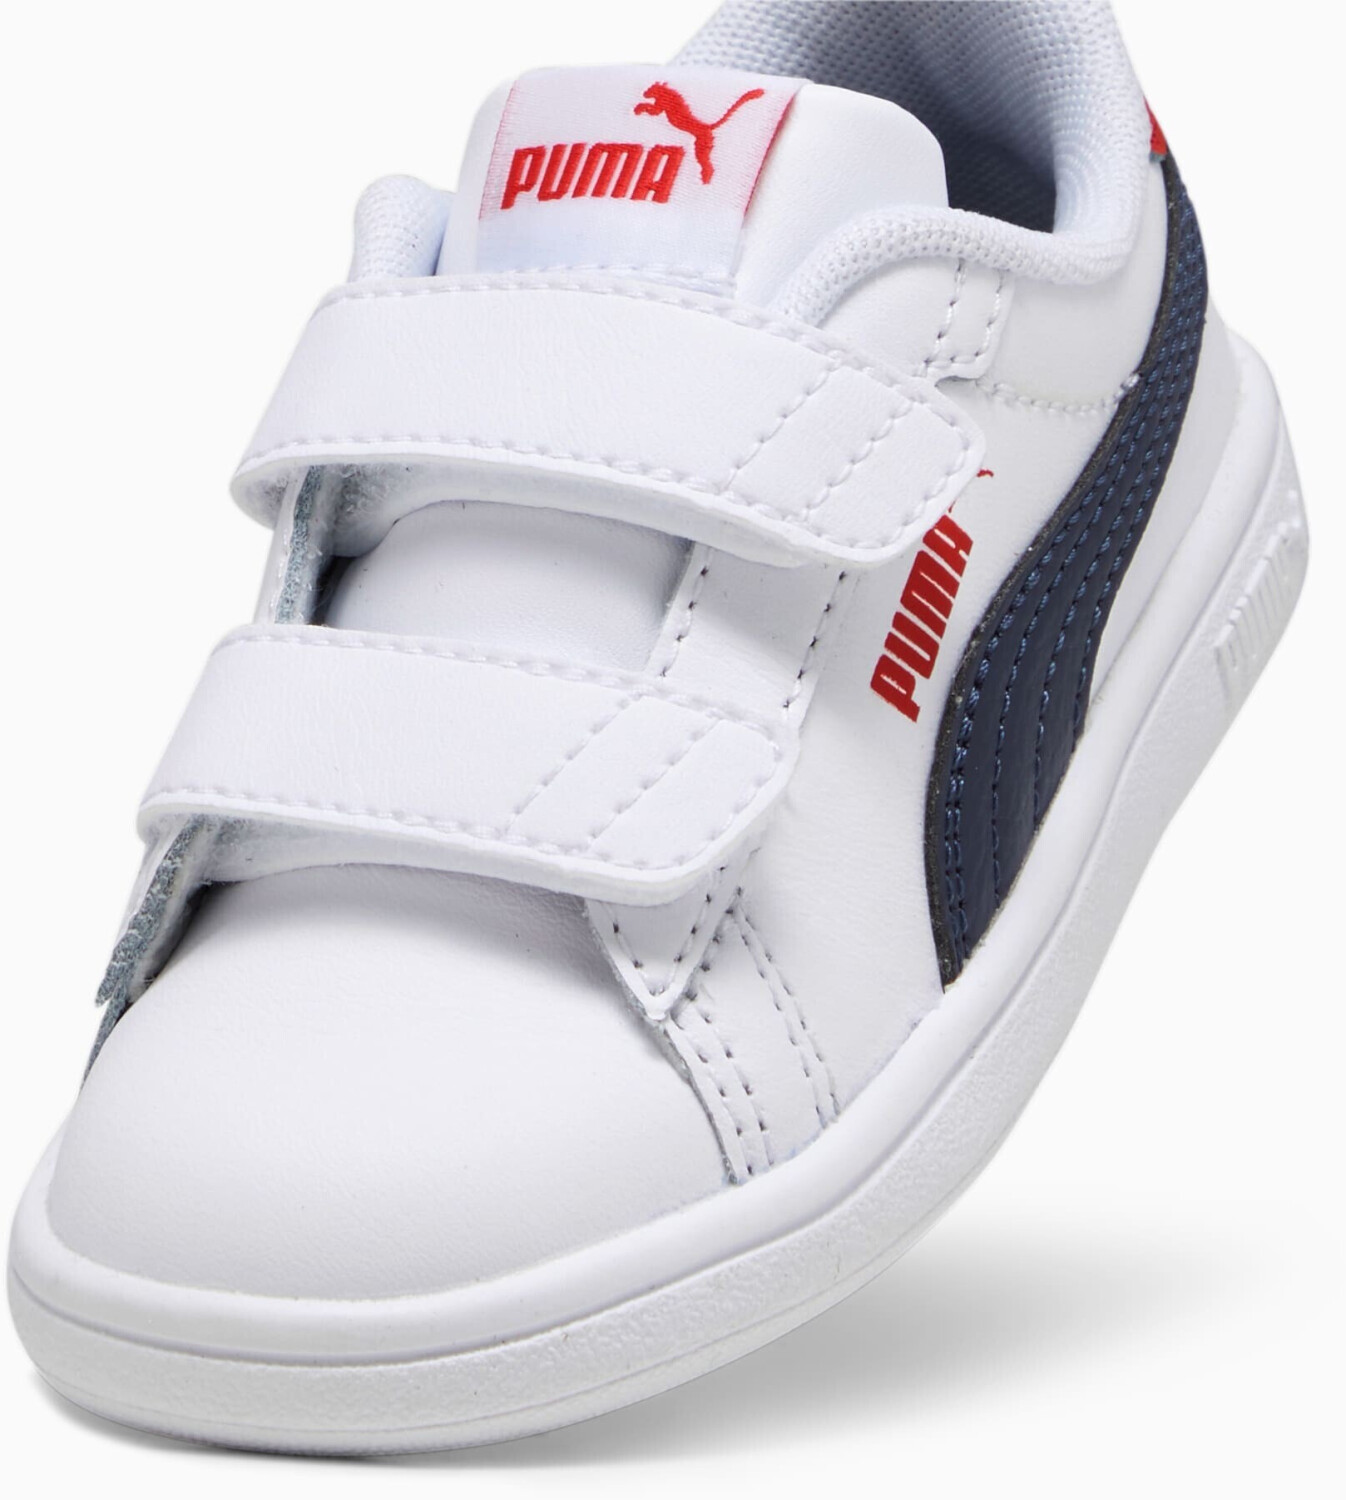 Puma Smash 3.0 Leather V en precios Baby time 41,95 puma (392034-11) | all white/puma red € desde Compara idealo navy/for